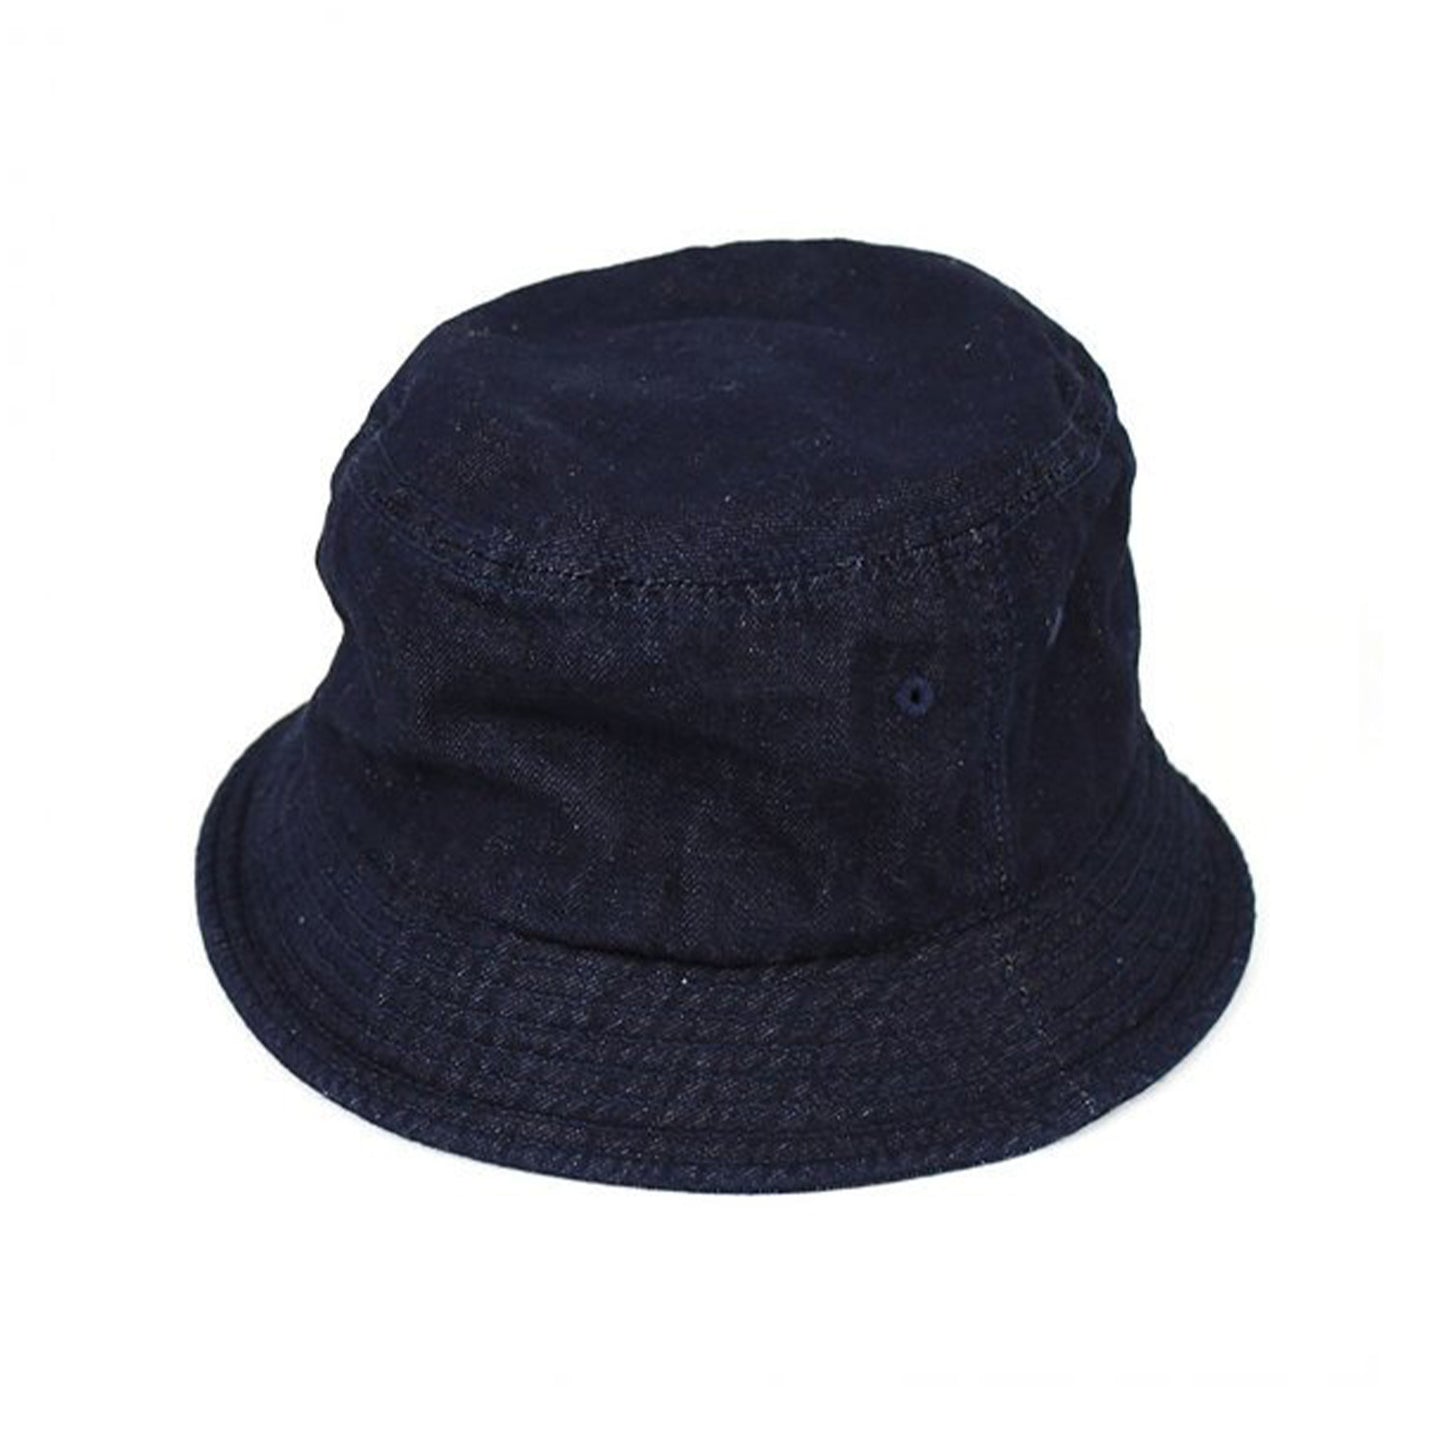 Standard Bucket Hat, S. Indigo